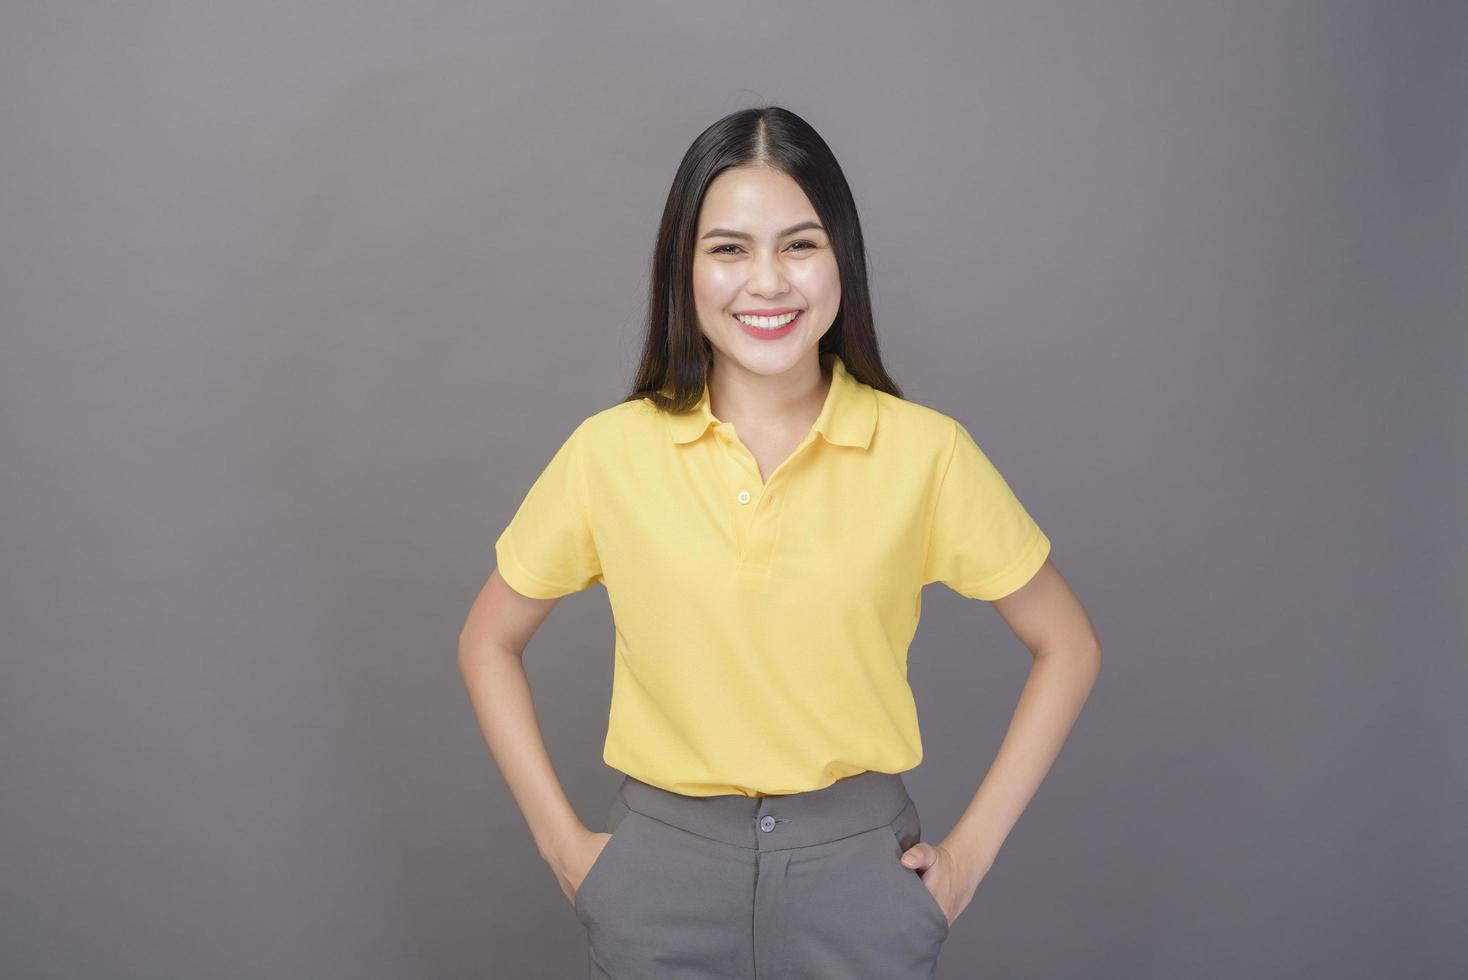 joven mujer hermosa y segura de sí misma con camisa amarilla está en un estudio de fondo gris foto